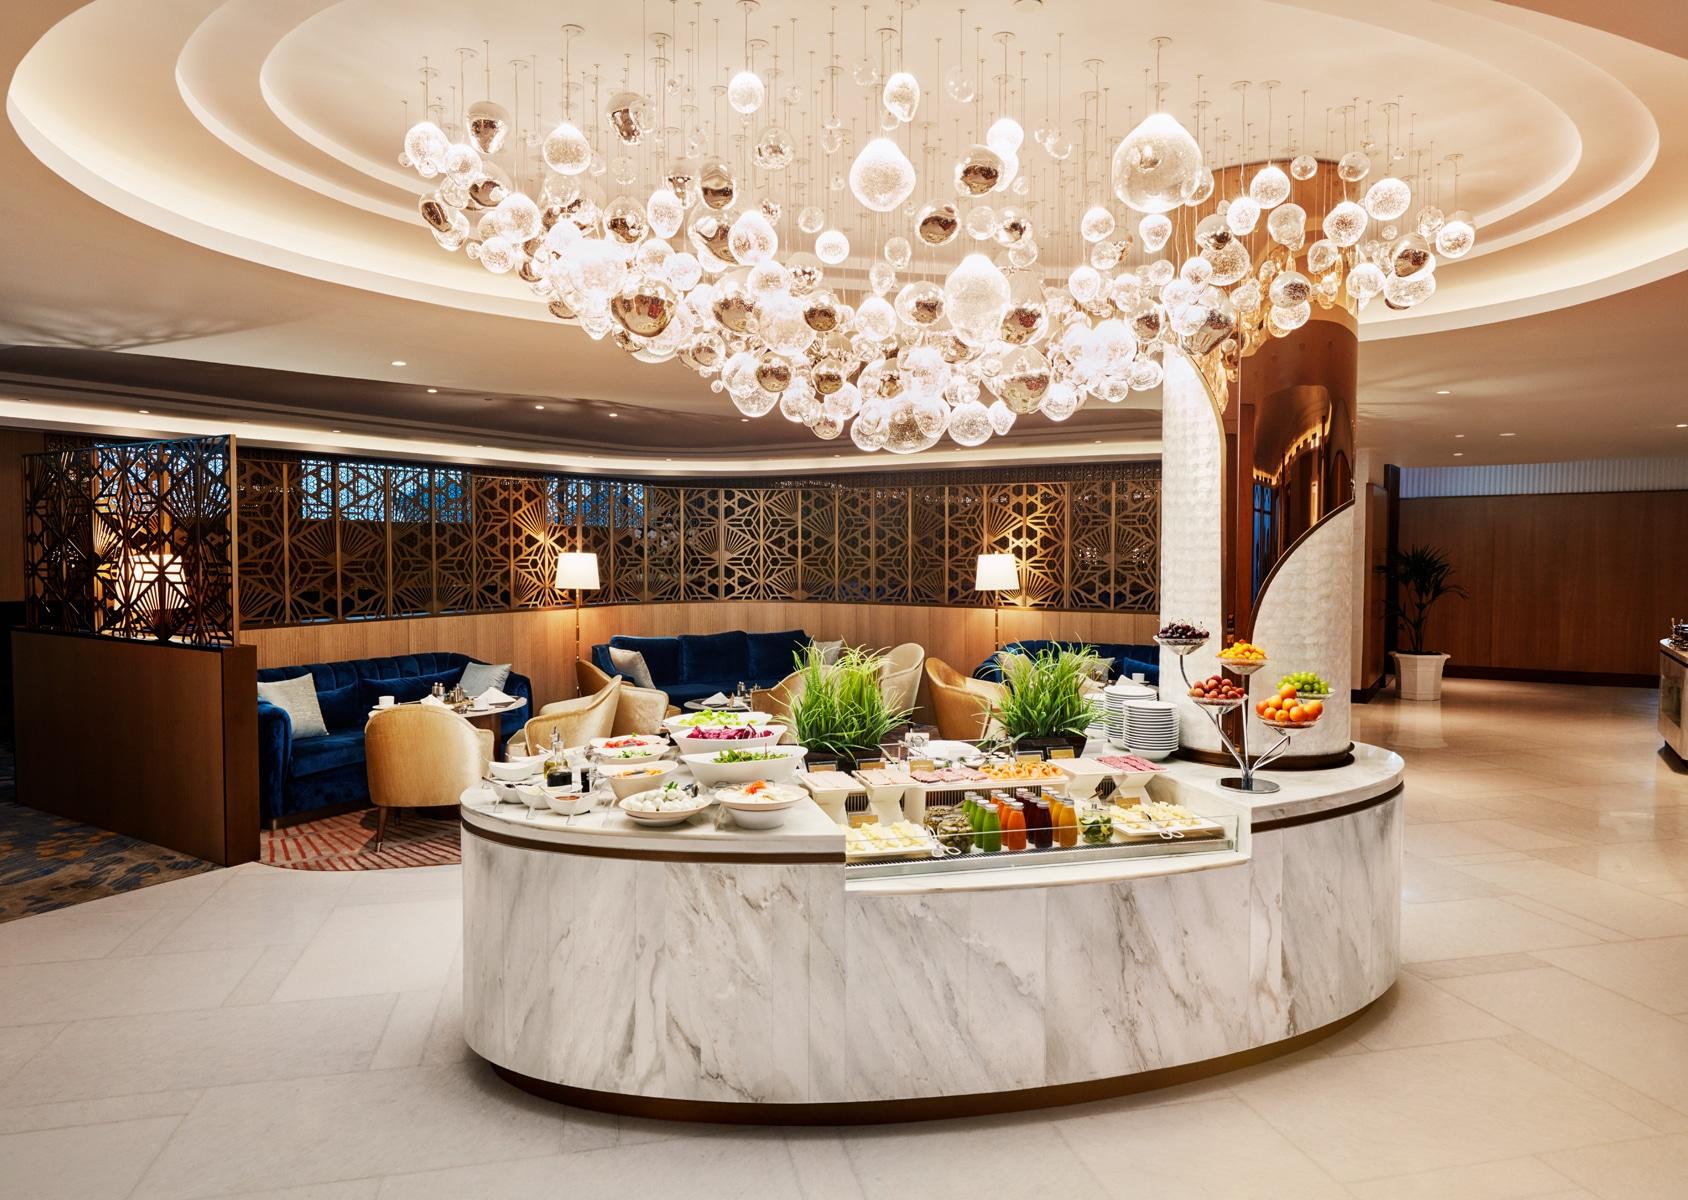 The Atlantis, The Palm Executive Club Lounge Food Area